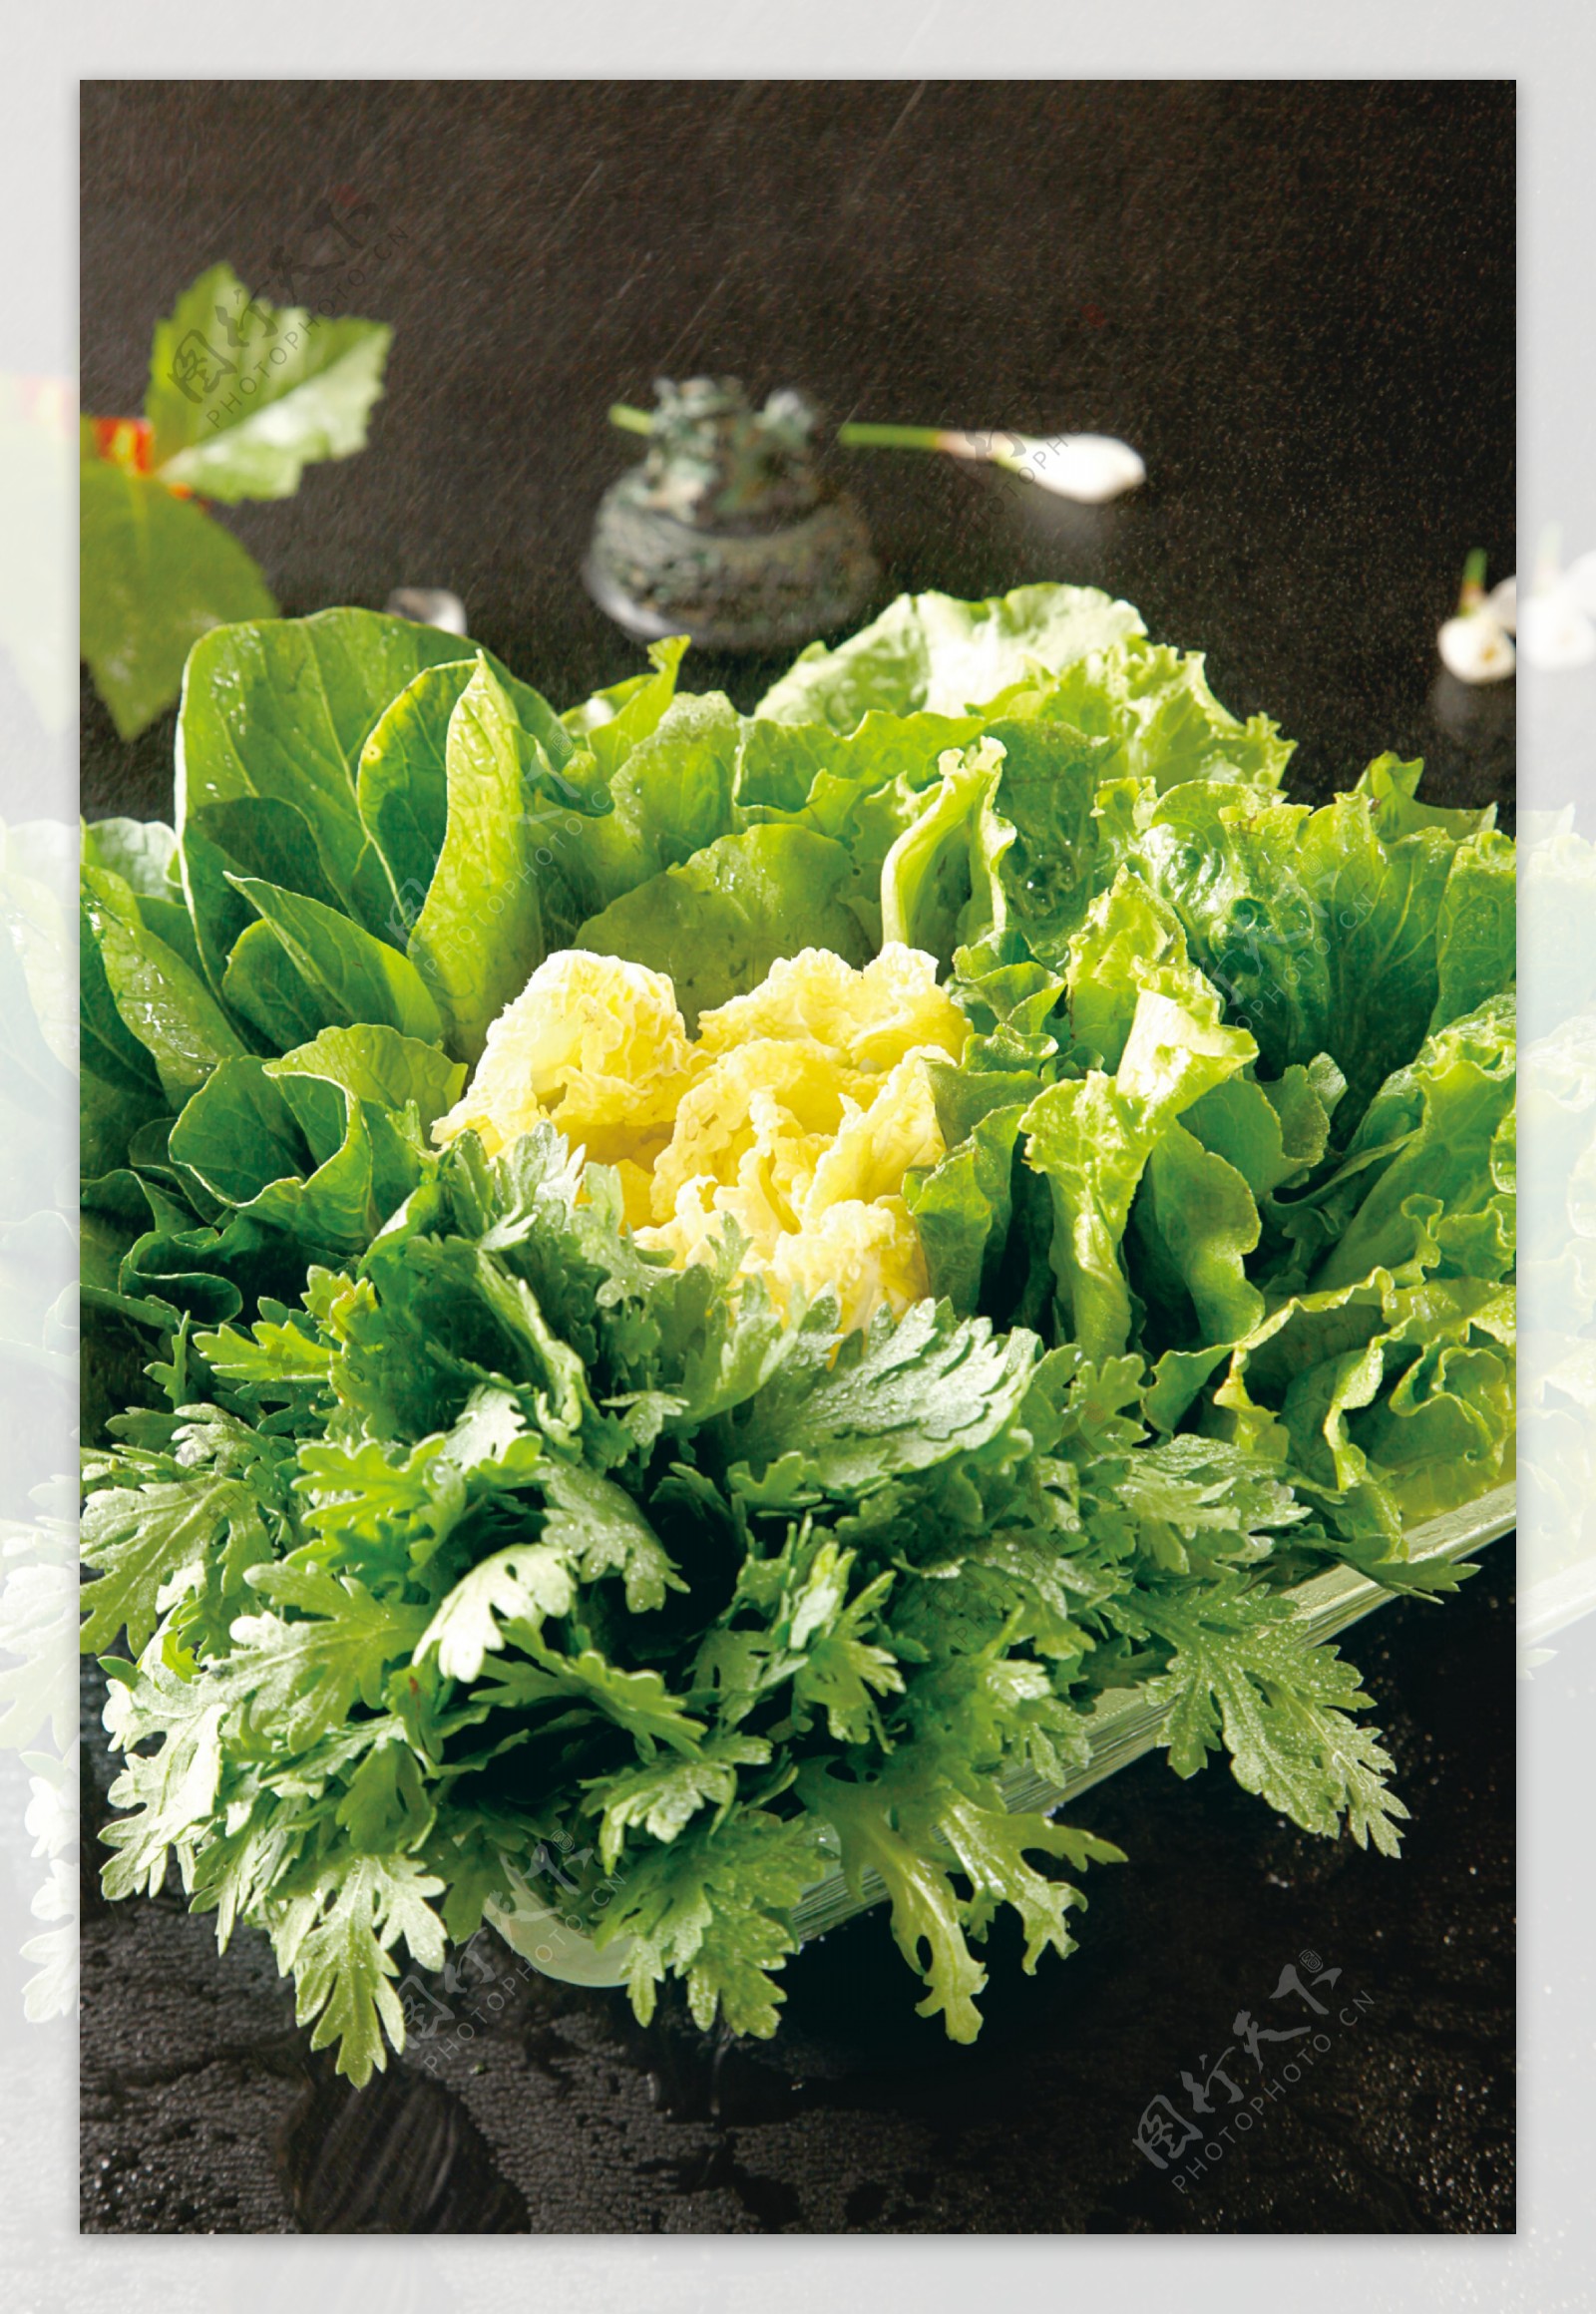 蔬菜拼盘图片素材-编号15796176-图行天下